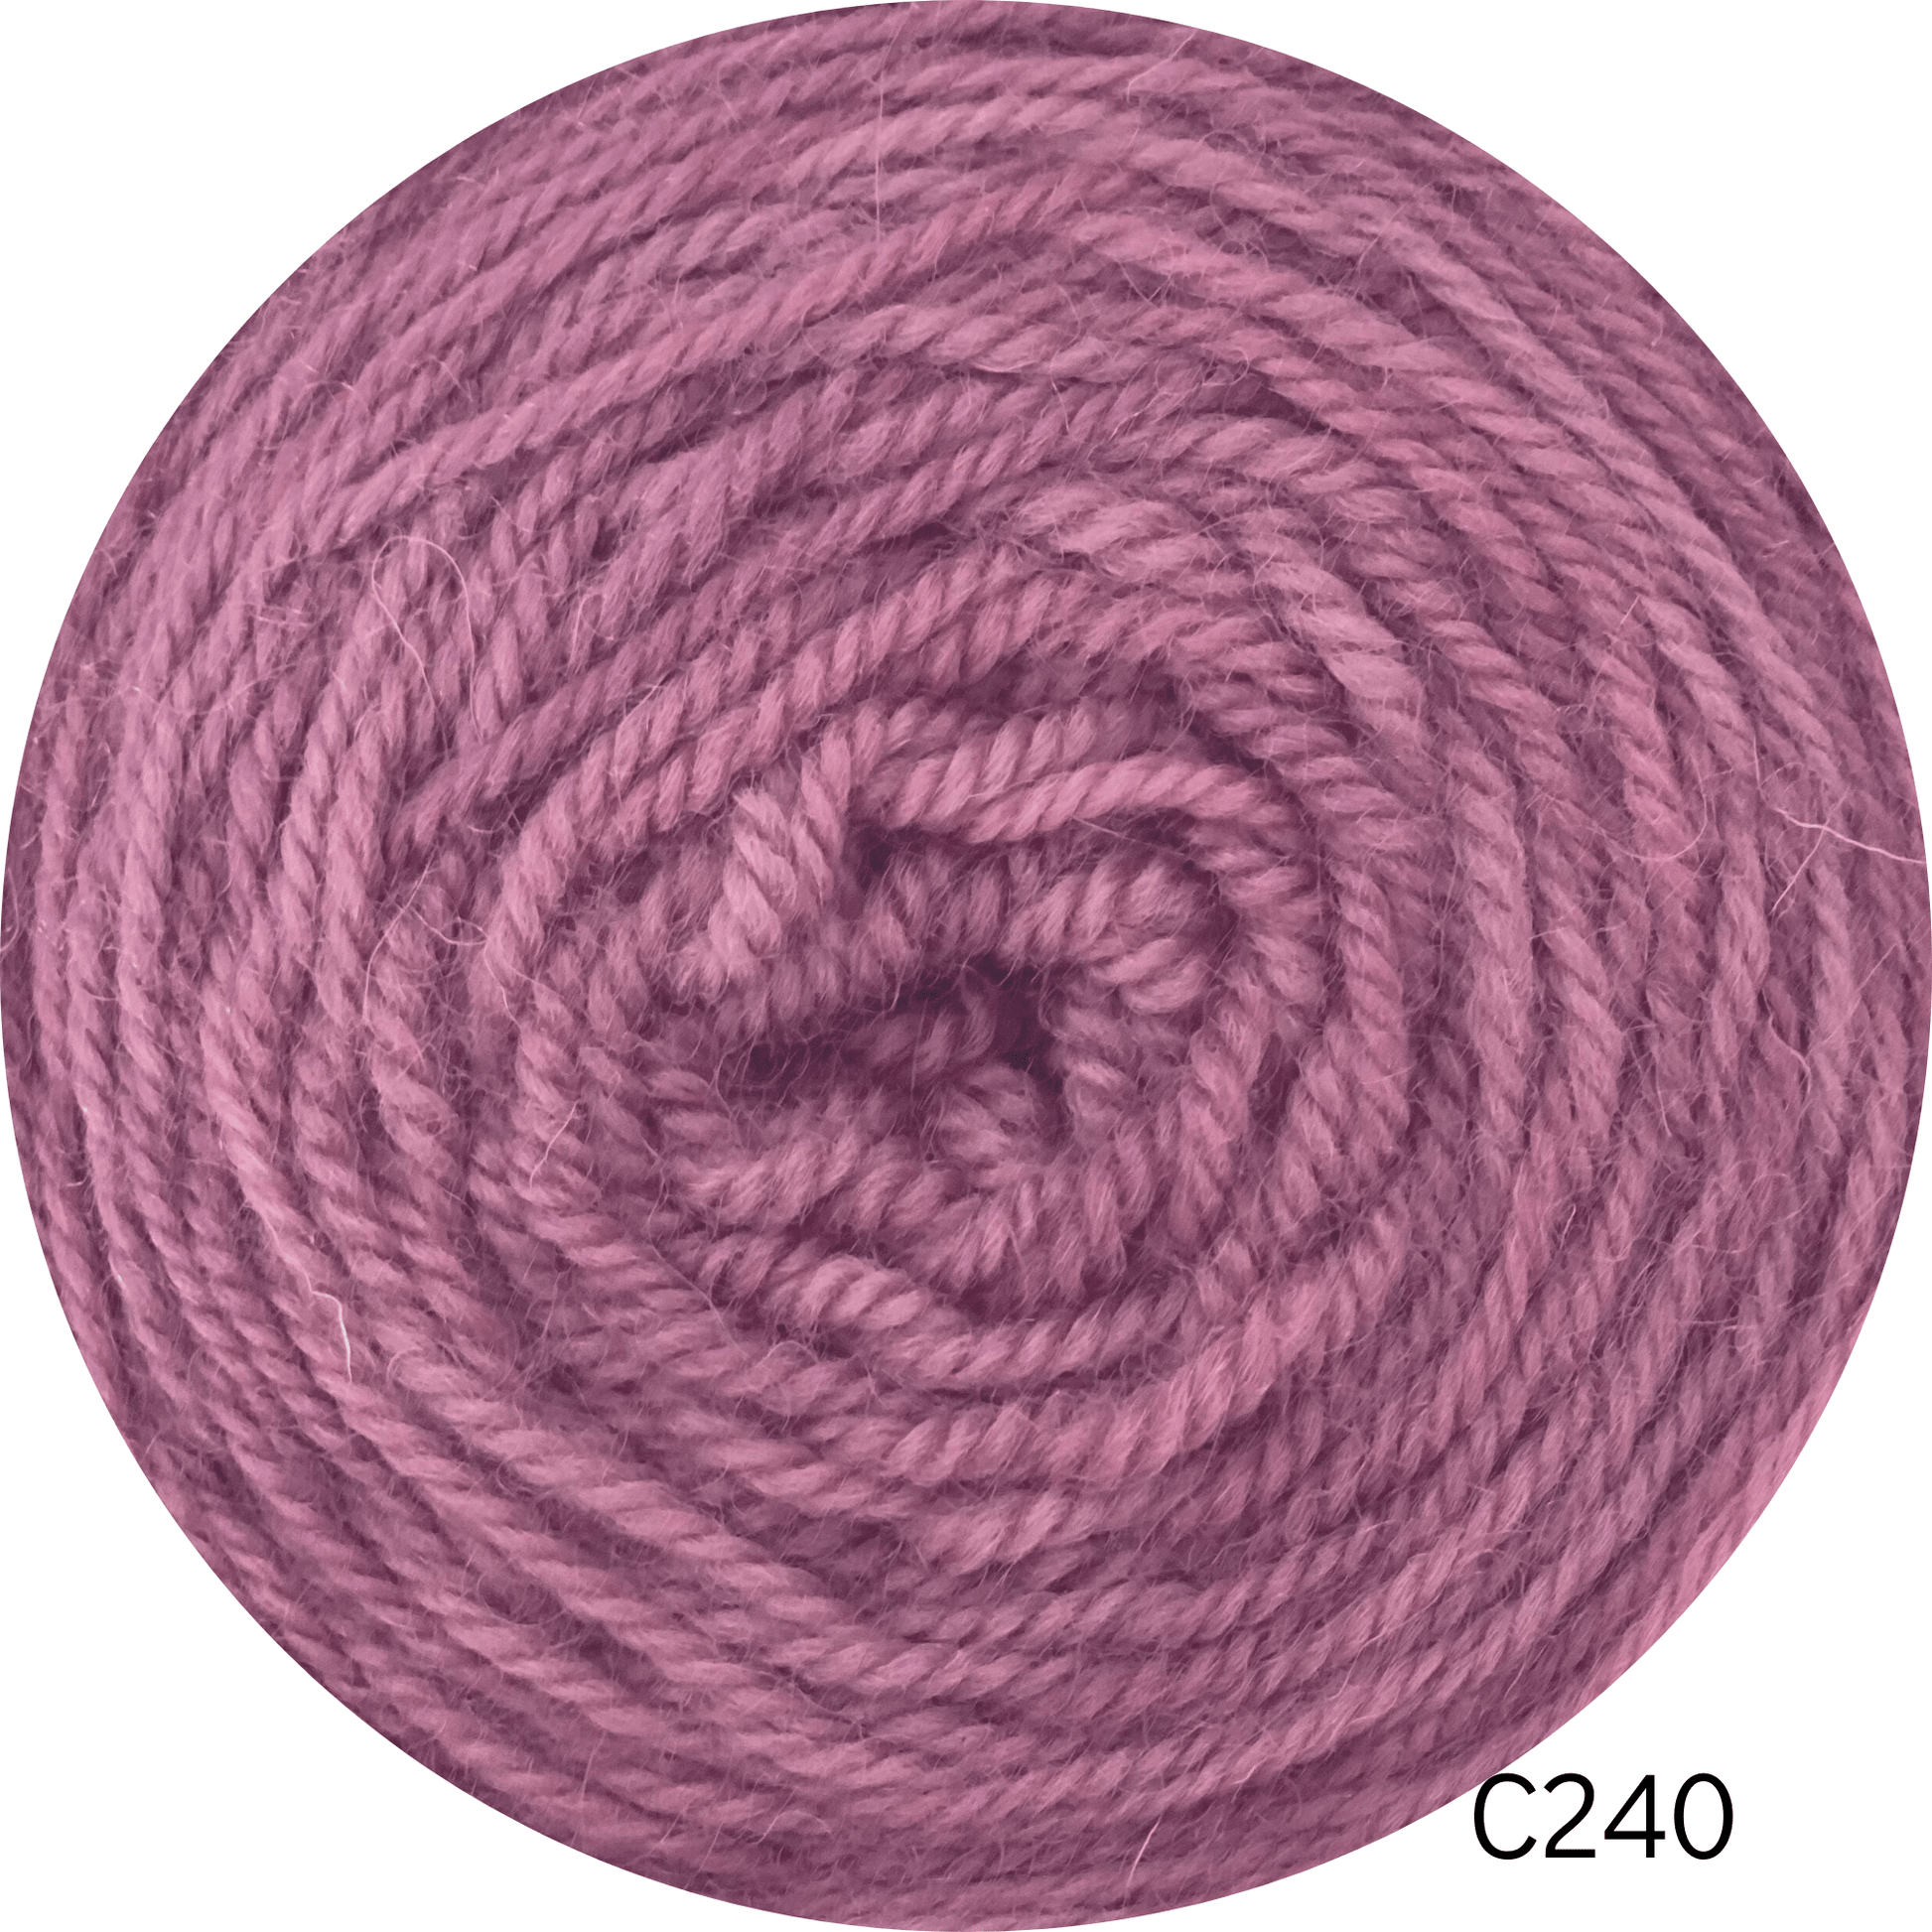 Coromina lana natural 20 grs C240 20GRS Atacama